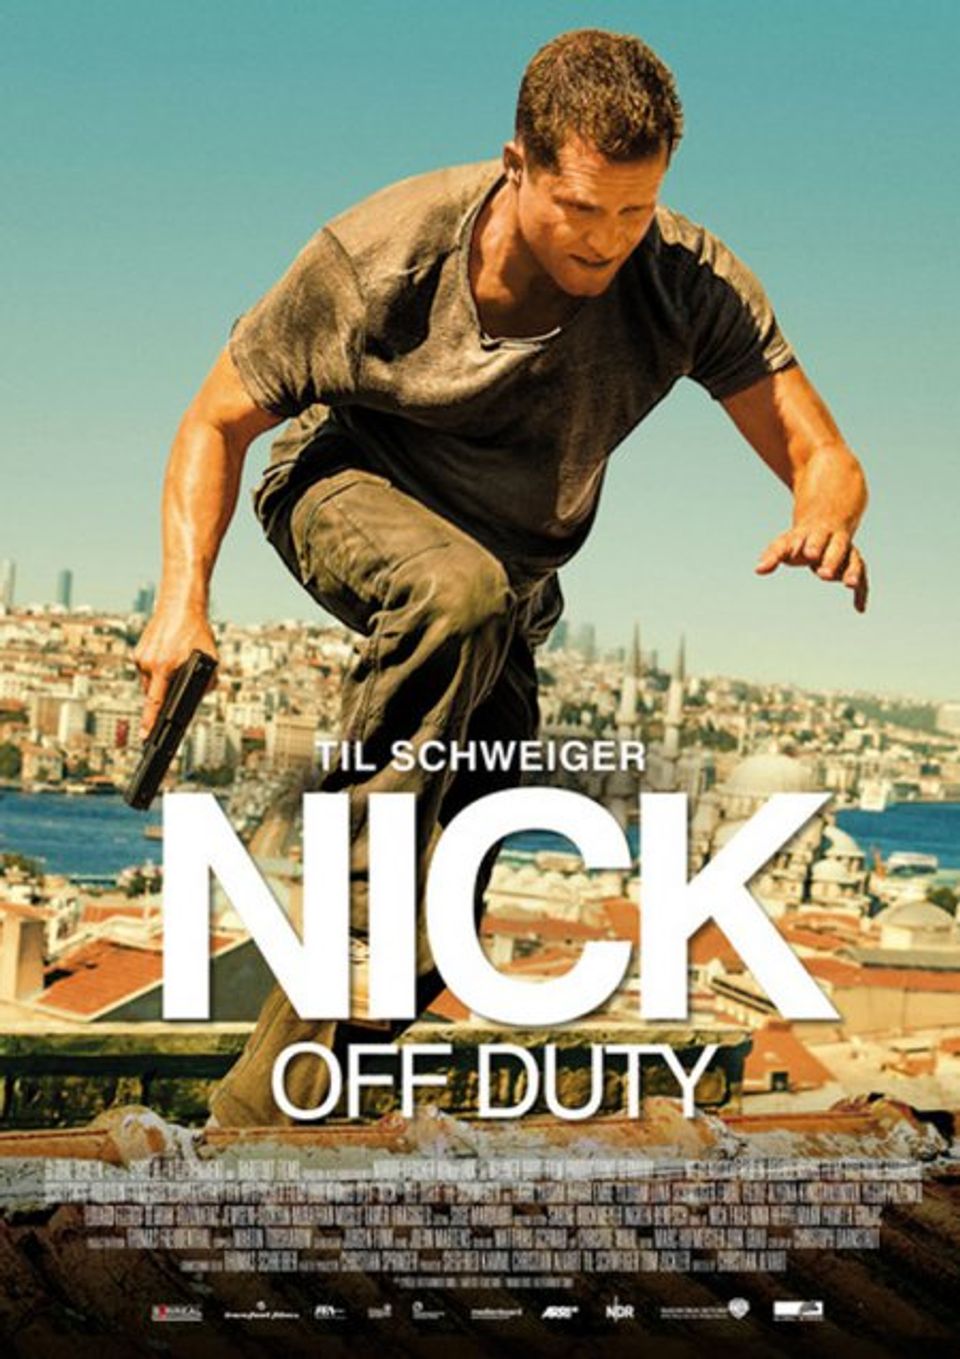 ดูหนังออนไลน์ Nick off Duty 2016 ปฏิบัติการล่าข้ามโลก doomovie-hd